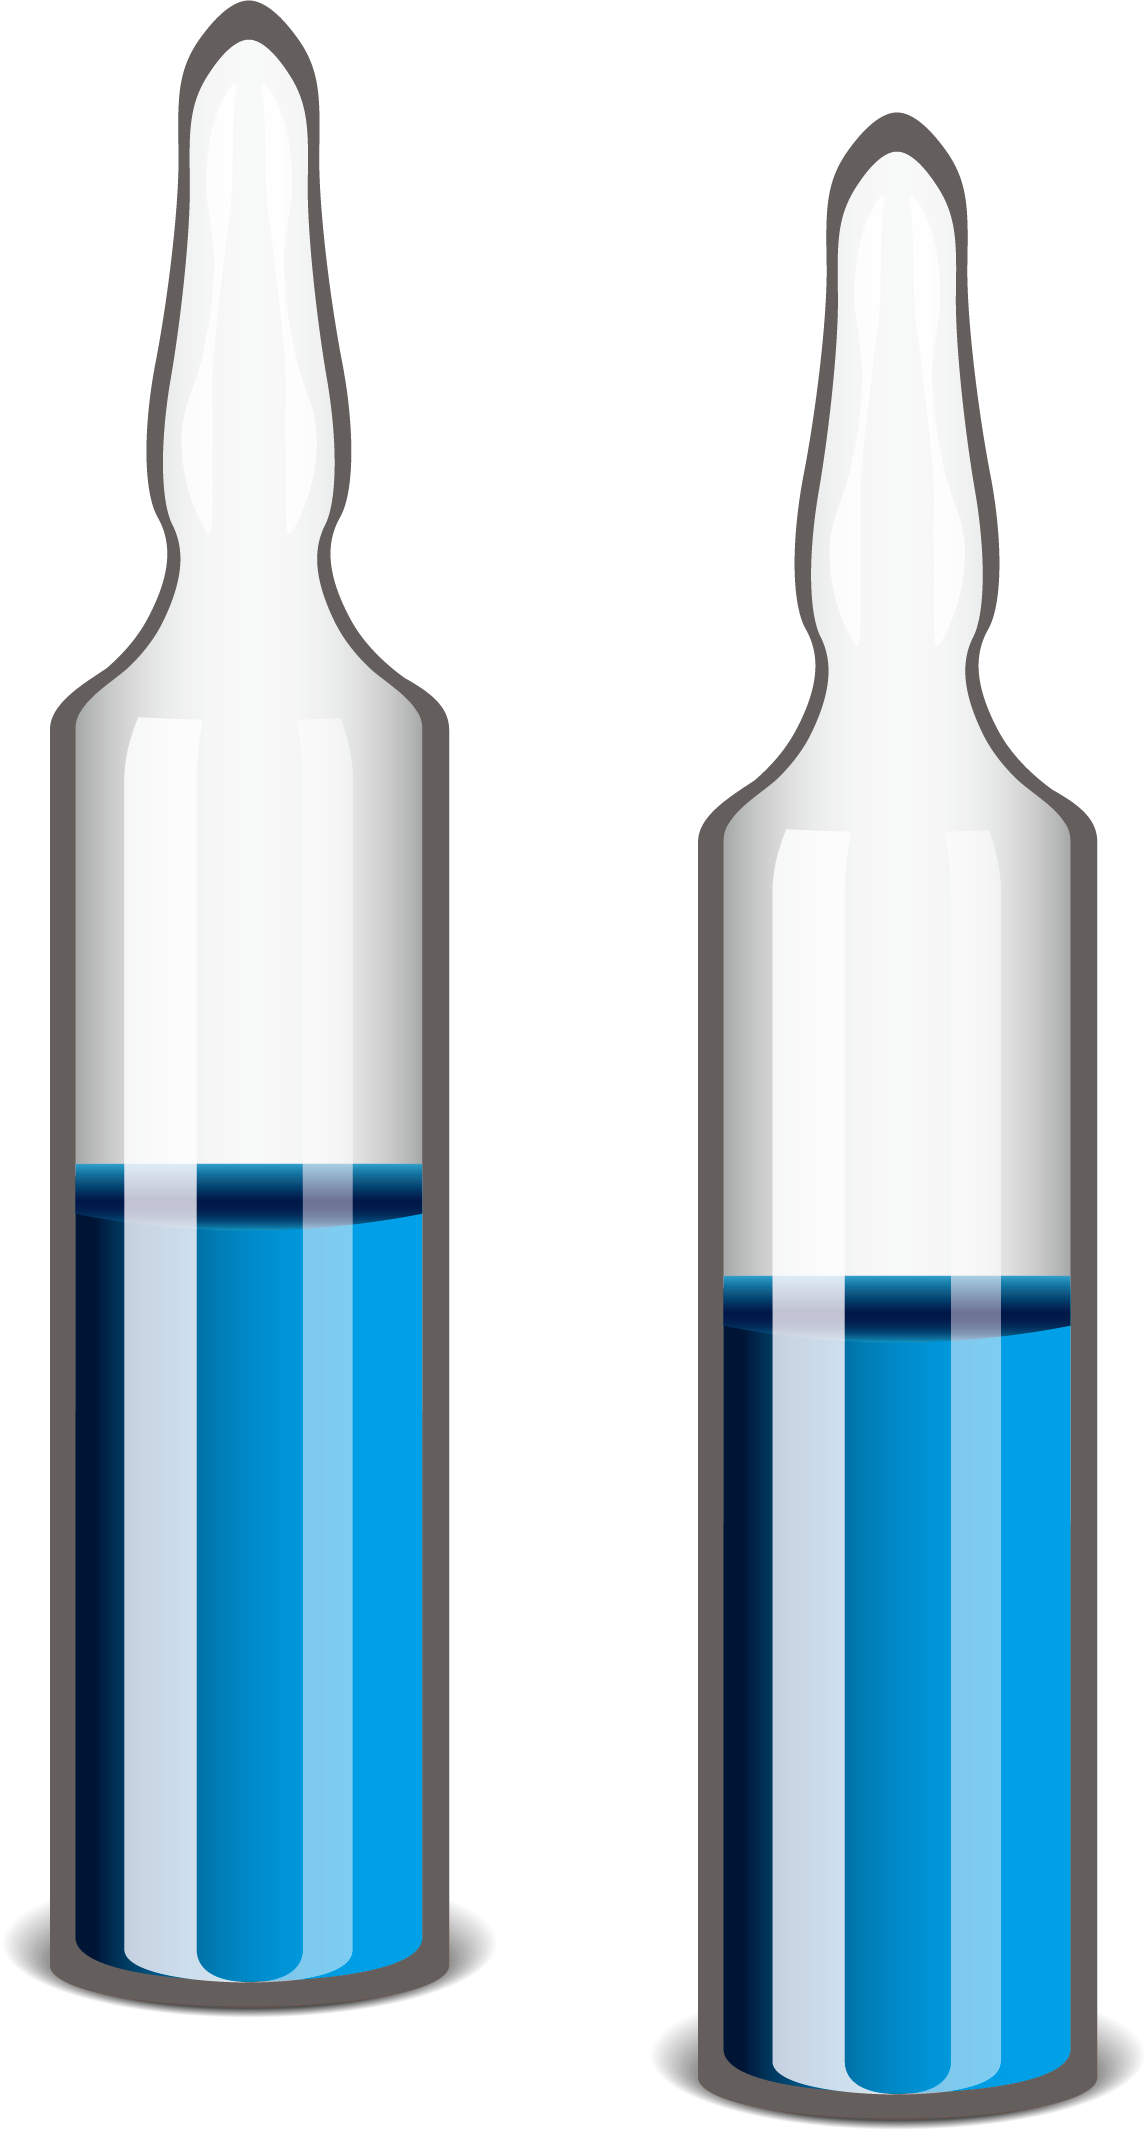 Glass Bottle Pharmaceutical Drug Medicine - Glass Bottle Pharmaceutical Drug Medicine (1147x2130)